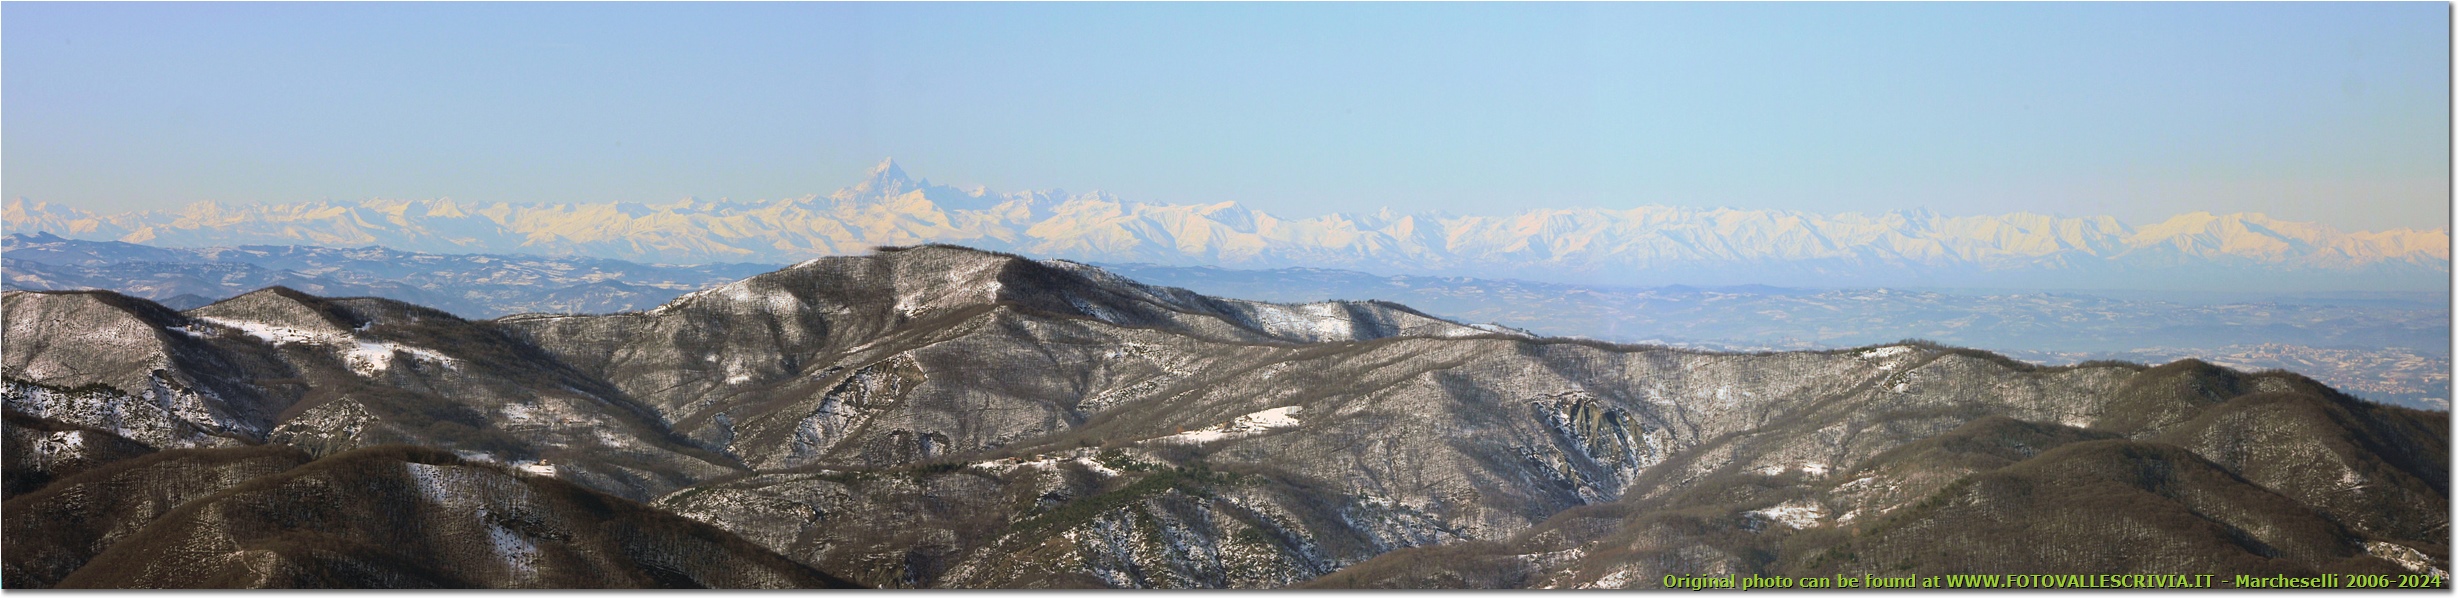 Monviso e Alpi occidentali innevati visti dal Monte Alpe - Busalla&Ronco Scrivia - 2009 - Panorami - Inverno - Canon EOS 300D